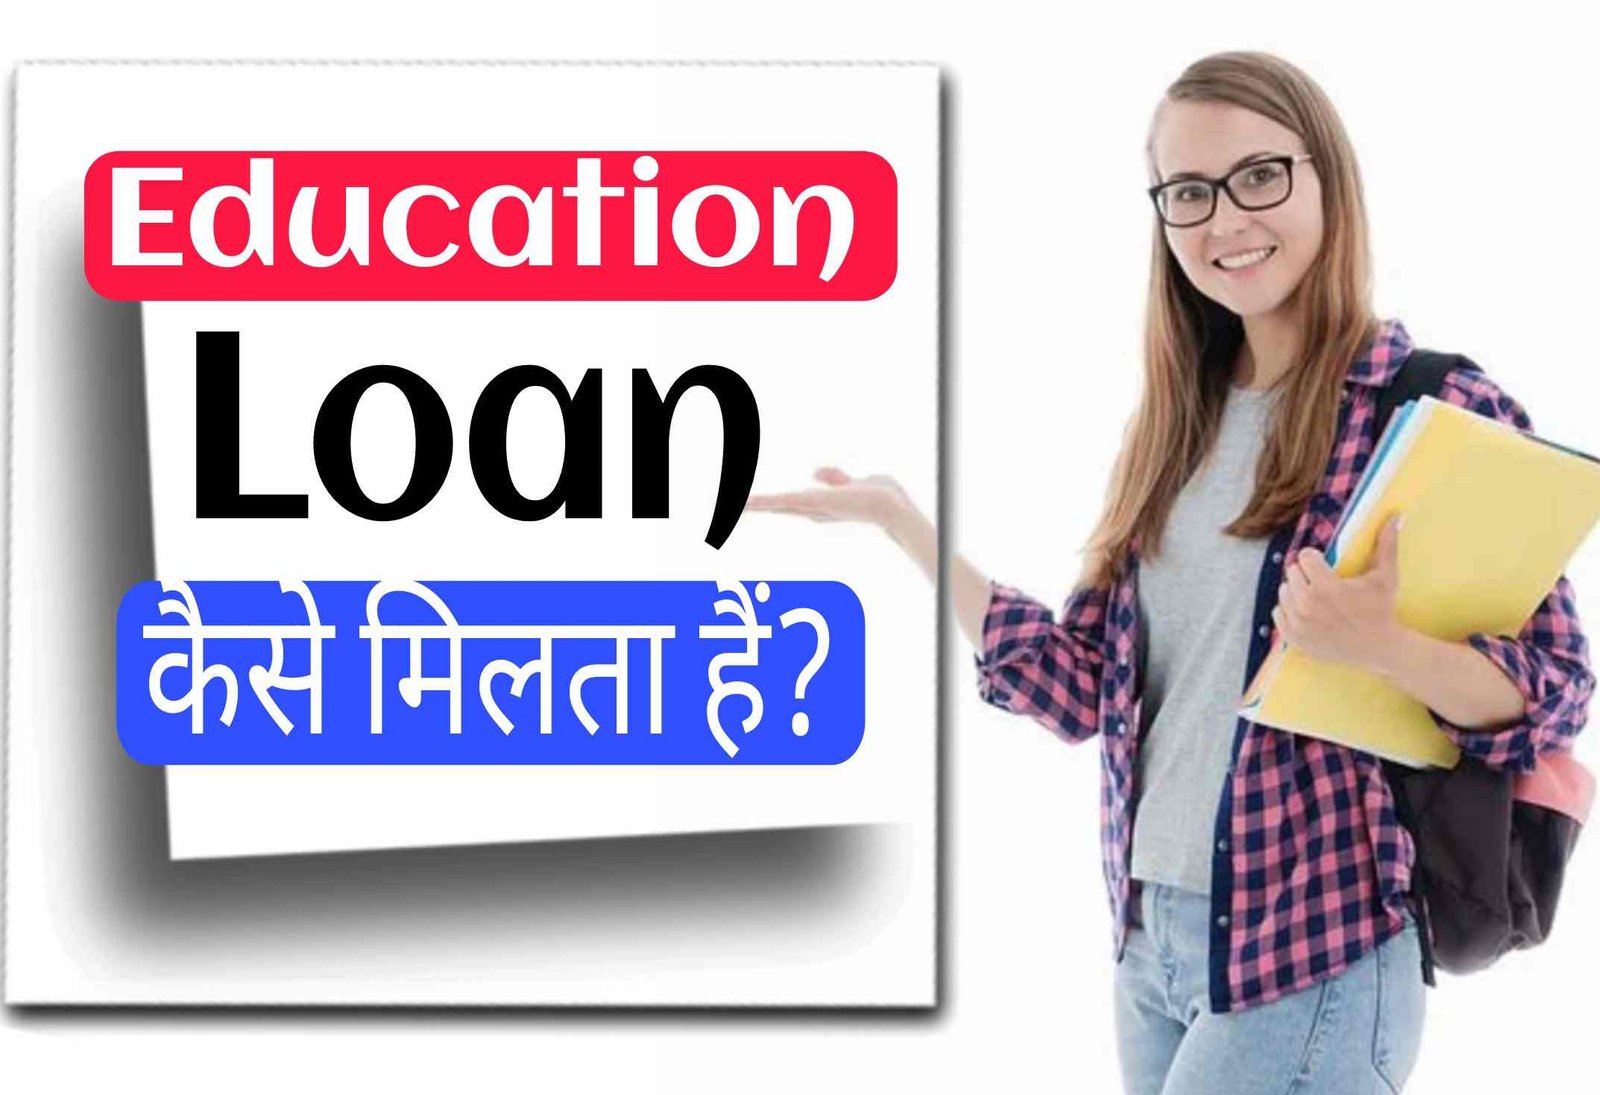 Education Loan कैसे मिलता है? एजुकेशन लोन के लिए Apply कैसे करें?